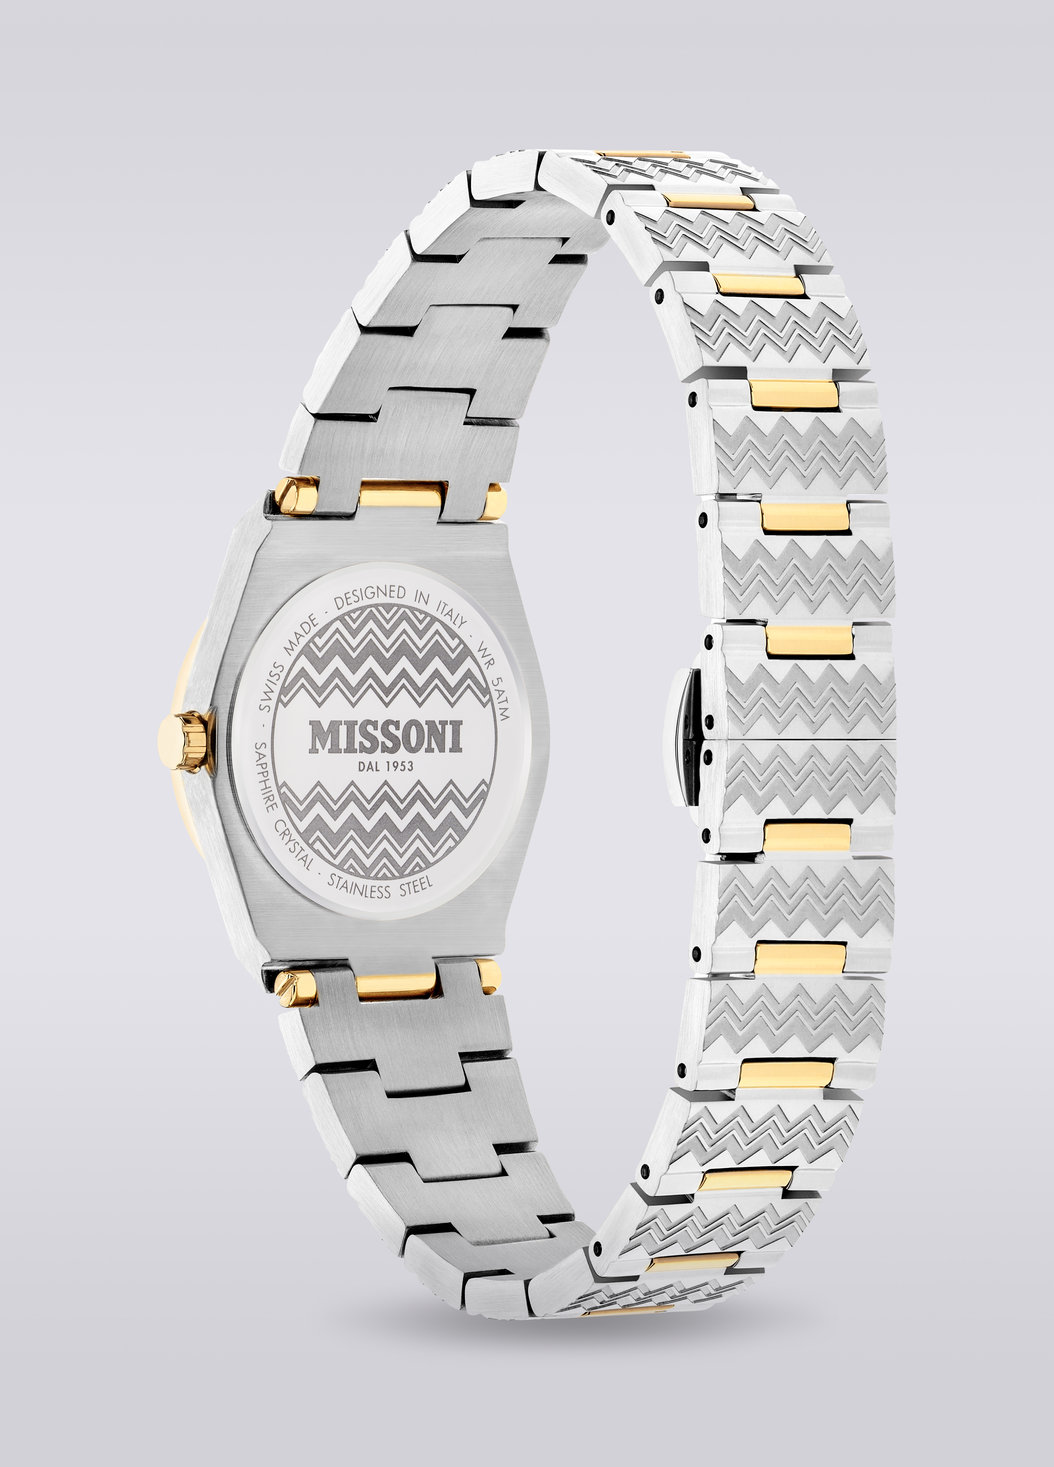 Missoni Milano 29 MM  case size watch, Multicoloured  - 8053147046167 - 2